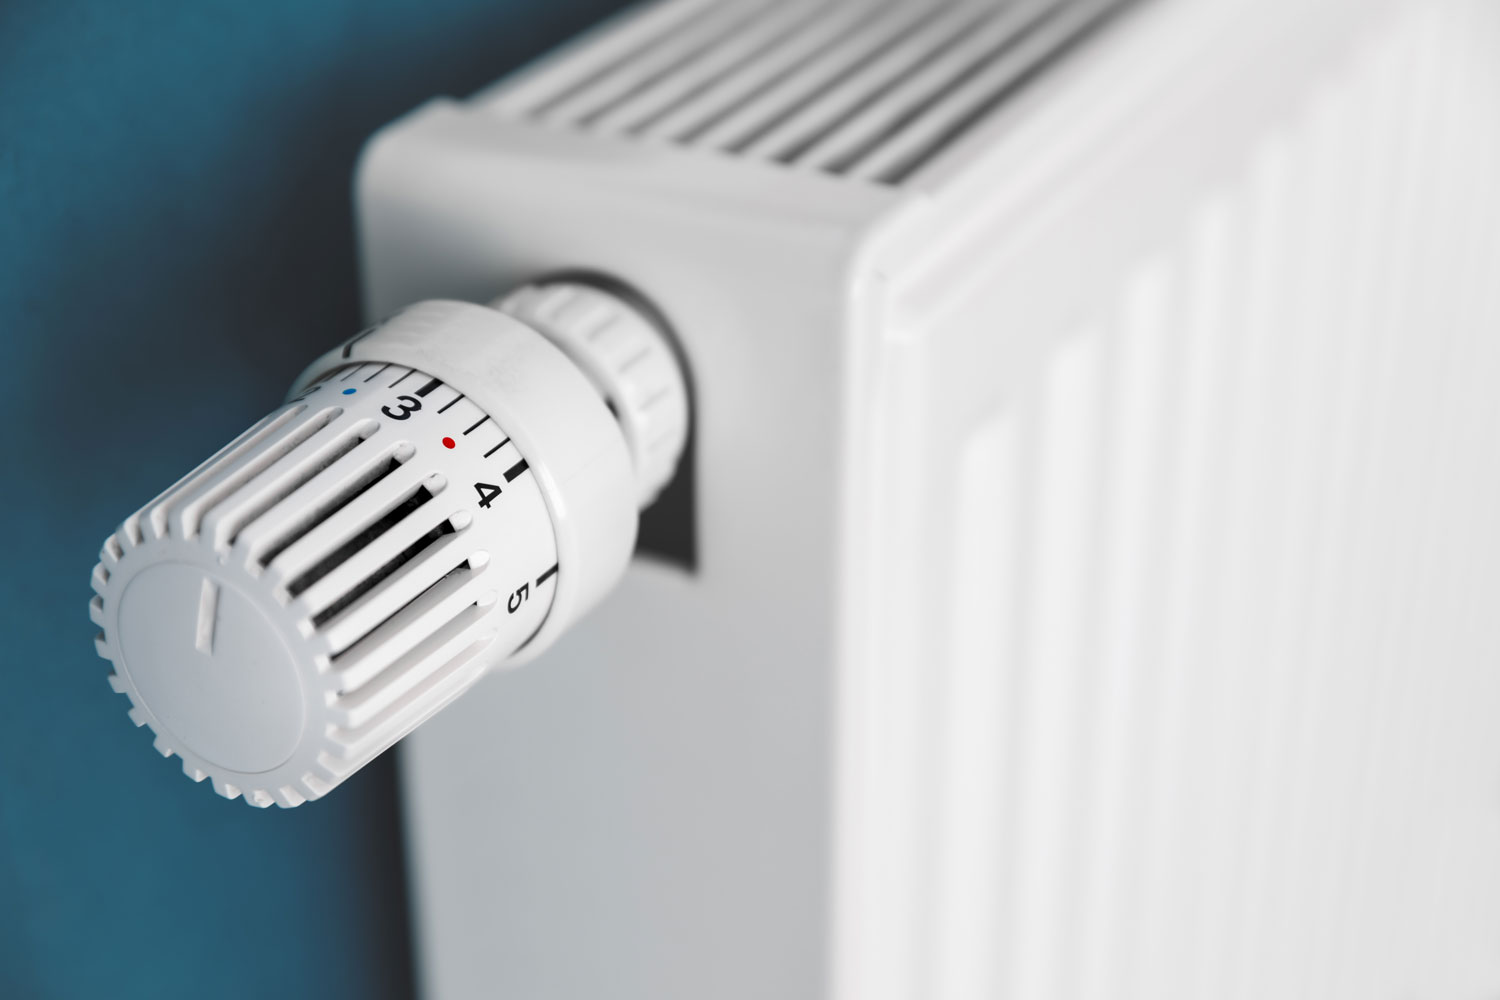 A wall heater adjustment knob